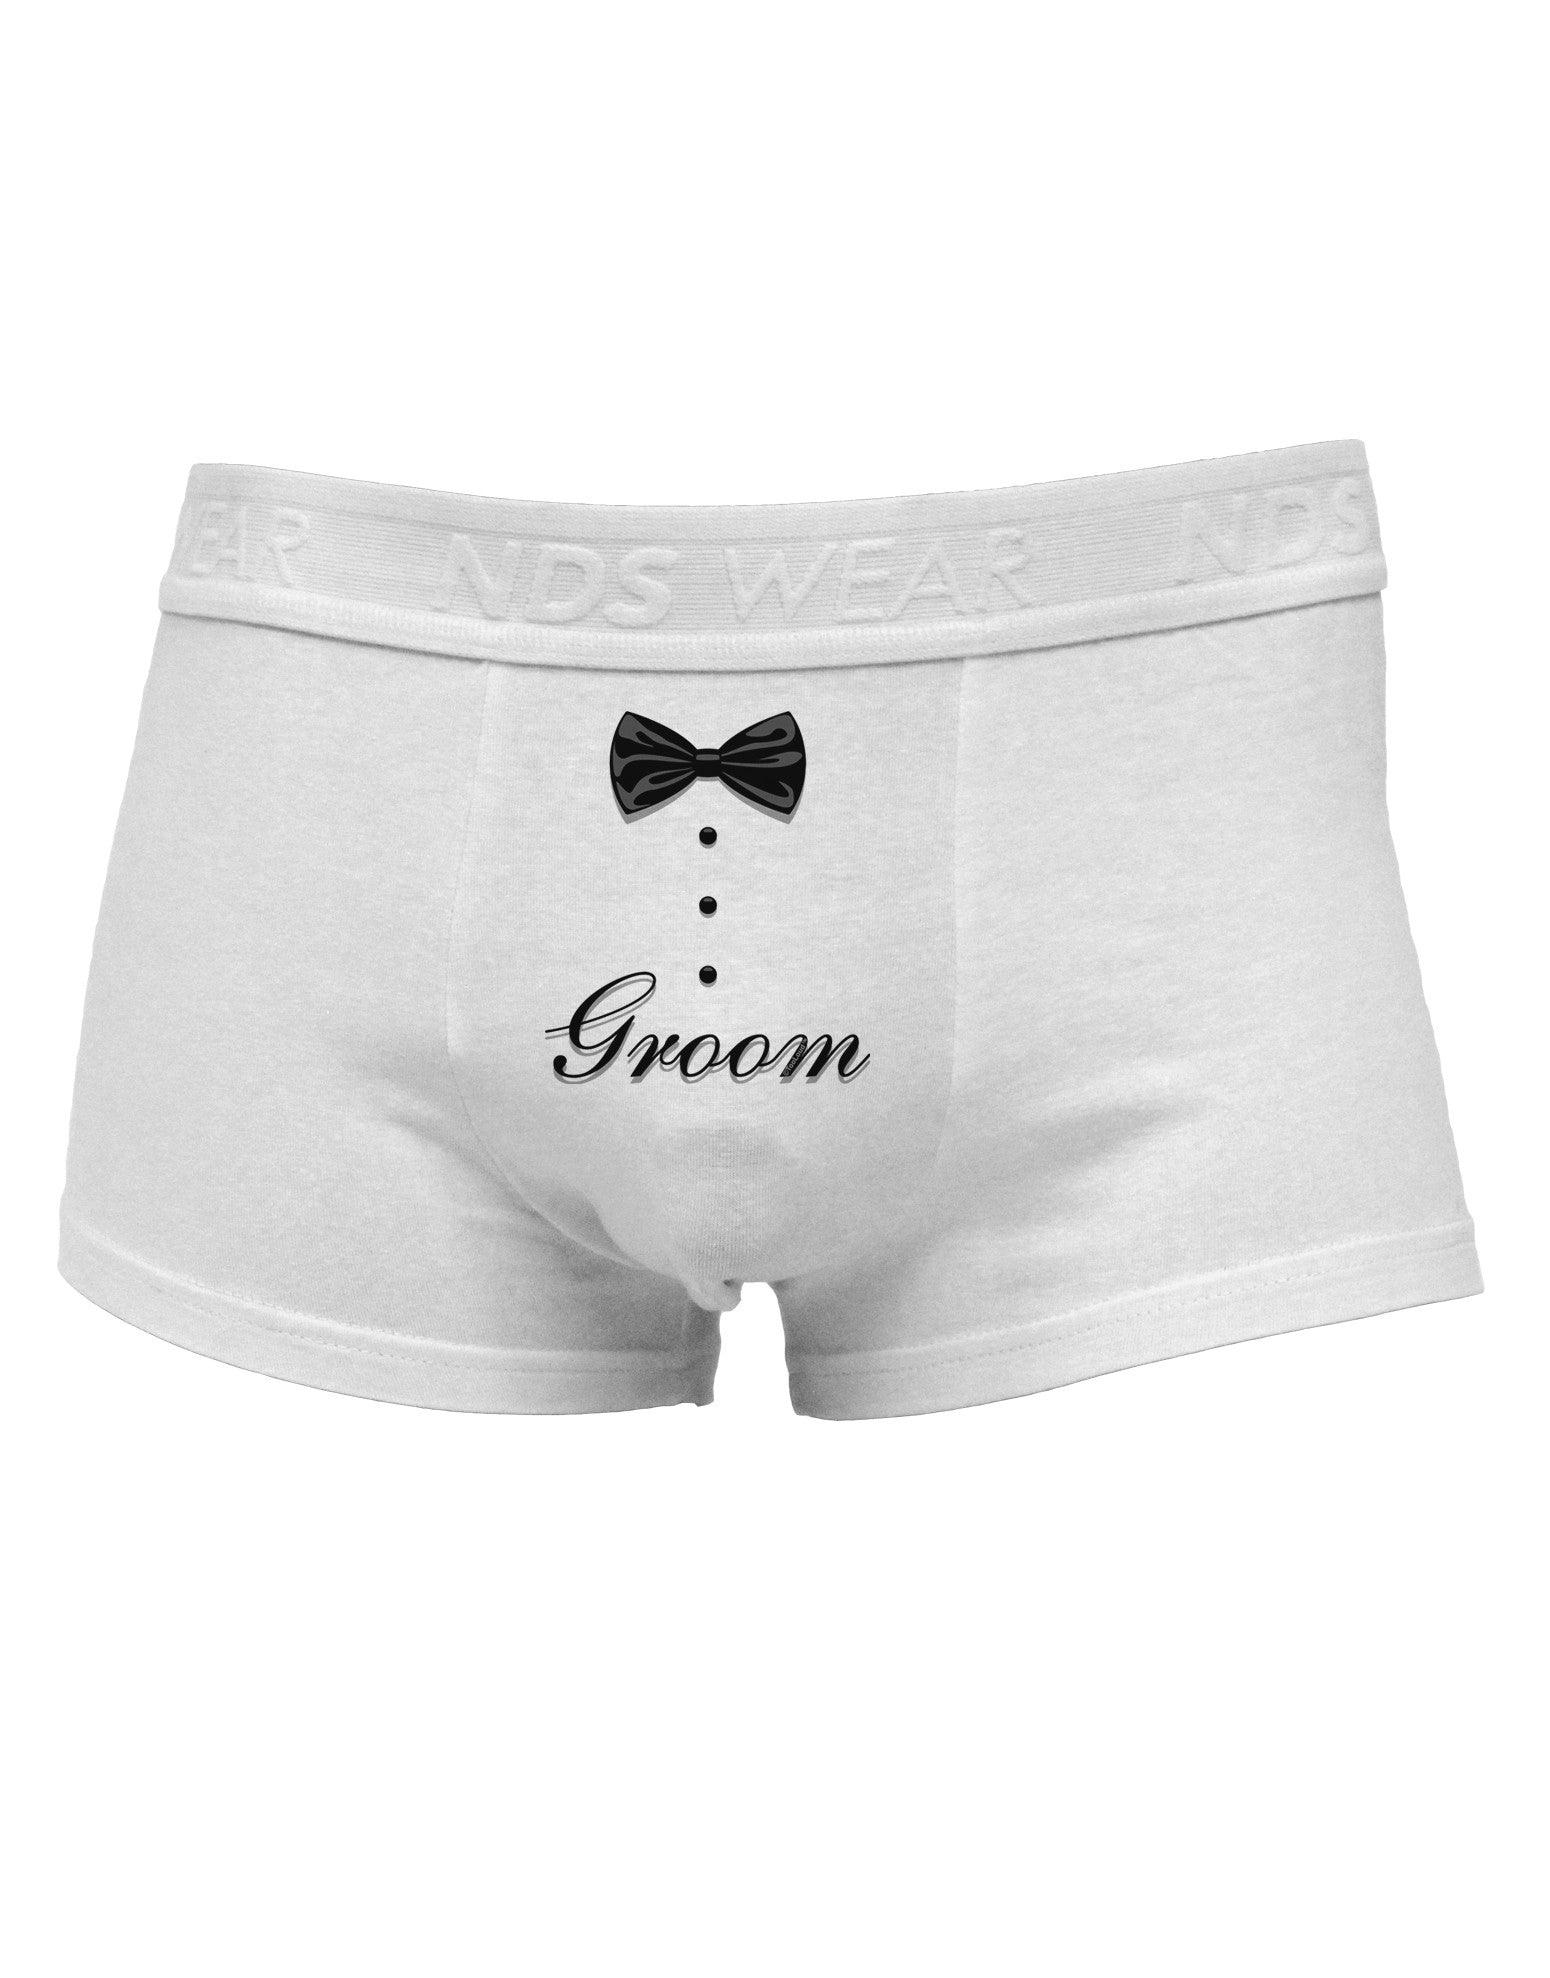 Tuxedo - Groom Mens Cotton Trunk Underwear - Davson Sales